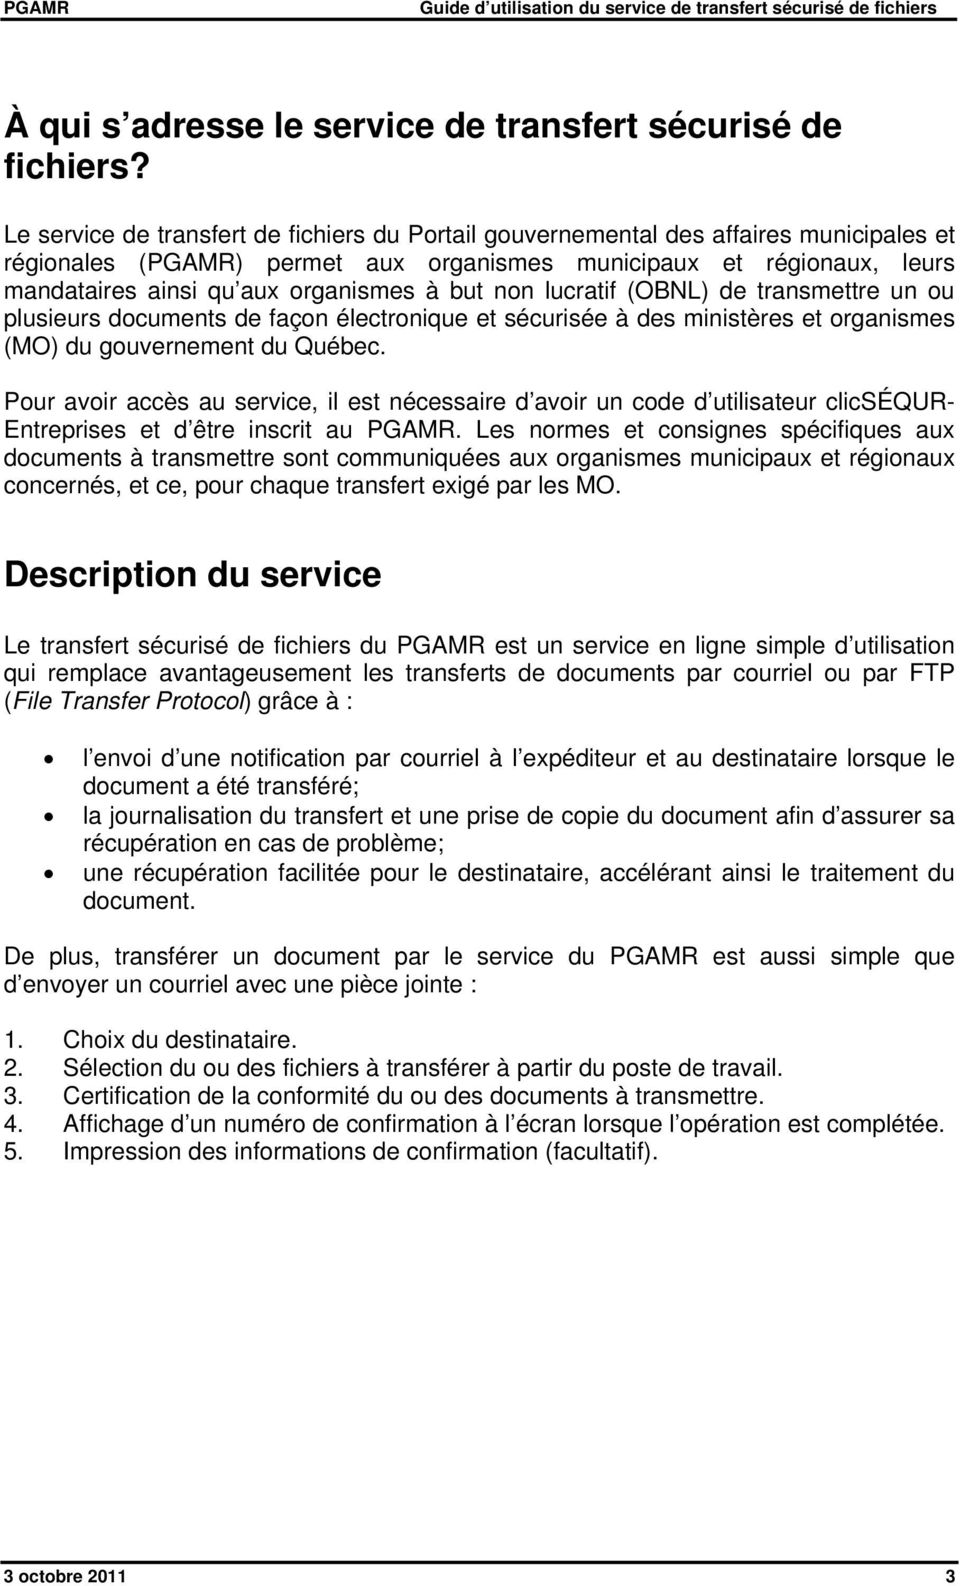 but non lucratif (OBNL) de transmettre un ou plusieurs documents de façon électronique et sécurisée à des ministères et organismes (MO) du gouvernement du Québec.